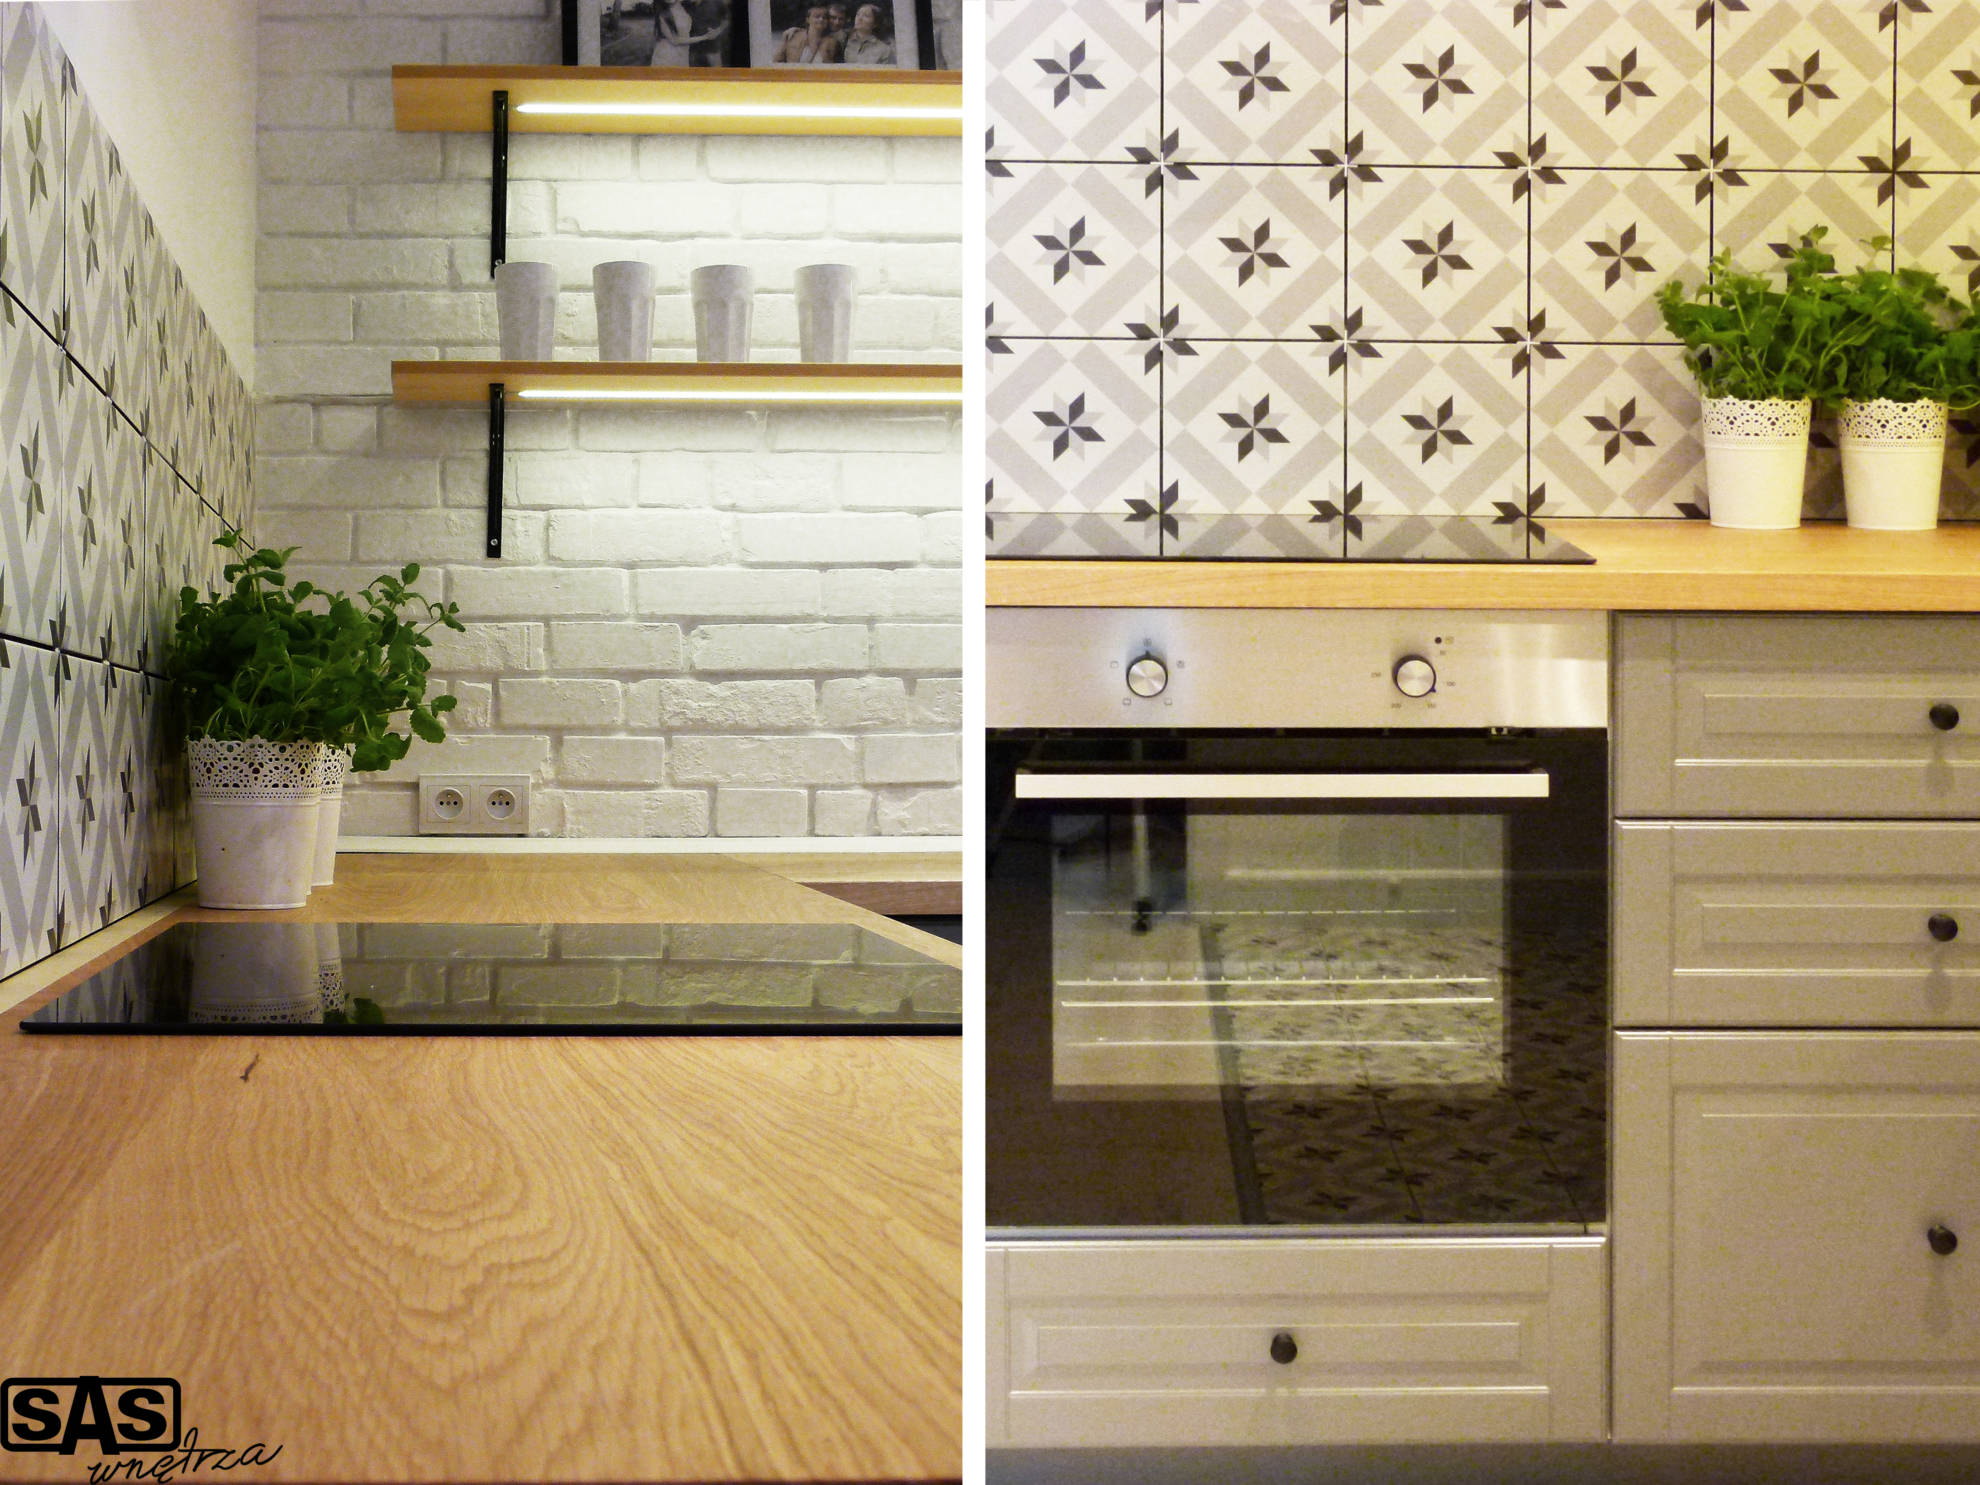 Meble kuchenne w mieszkaniu na wynajem - meble kuchenne wykonanie SAS Wnętrza i Kuchnie - projekt architekt wnętrz Emilia Strzempek Plasun.